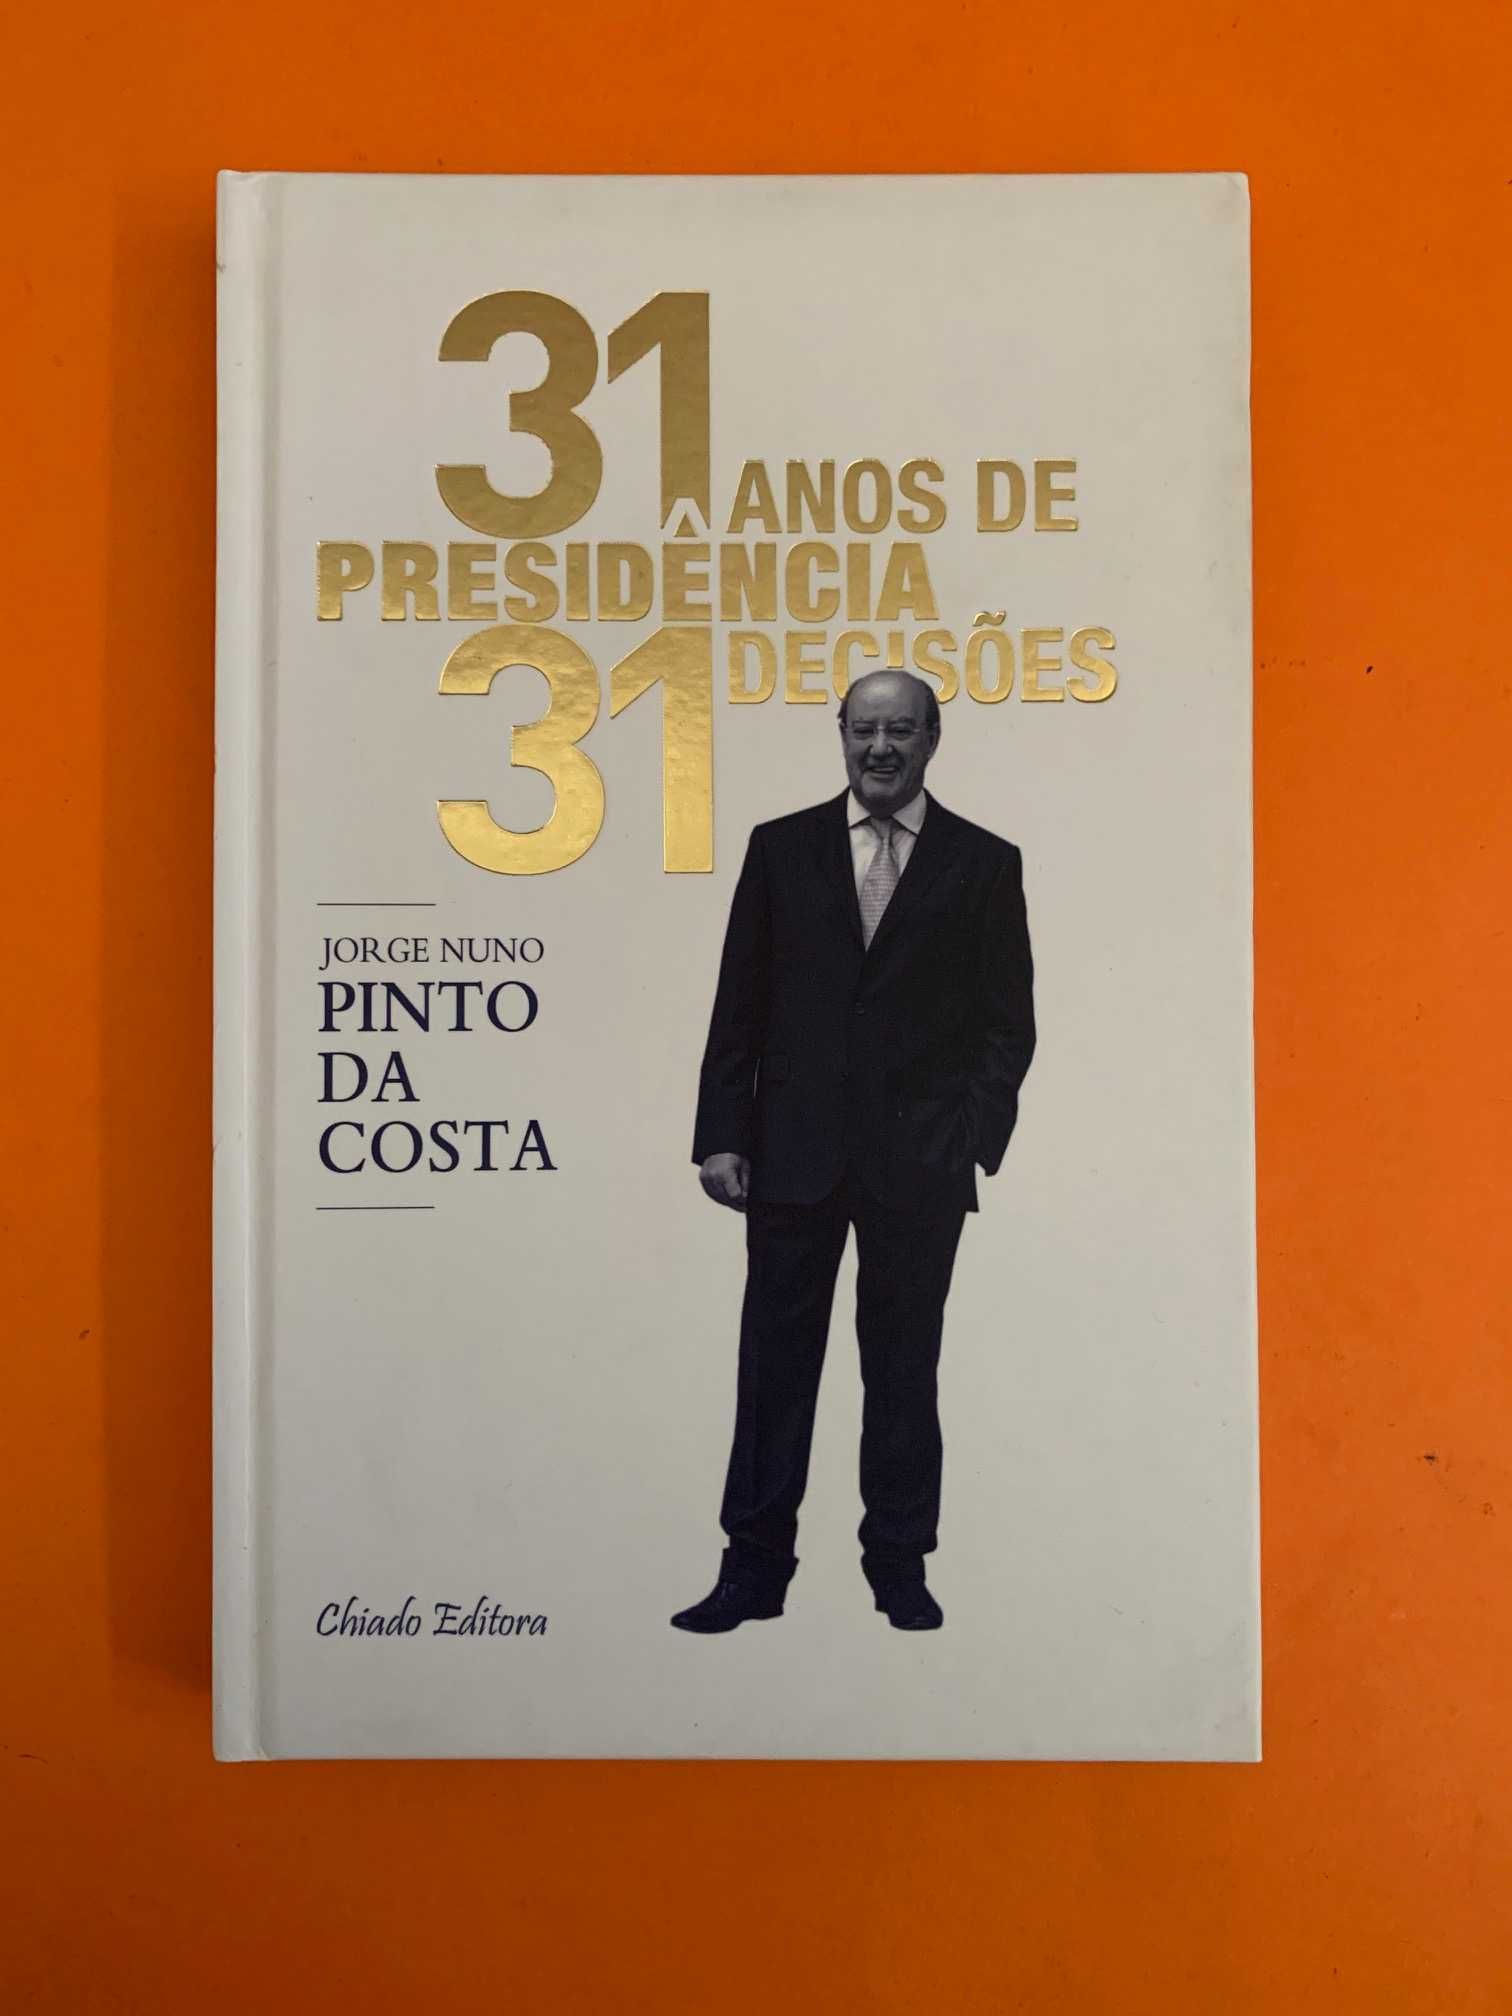 31 Anos de Presidência 31 Decisões - Jorge Nuno Pinto da Costa